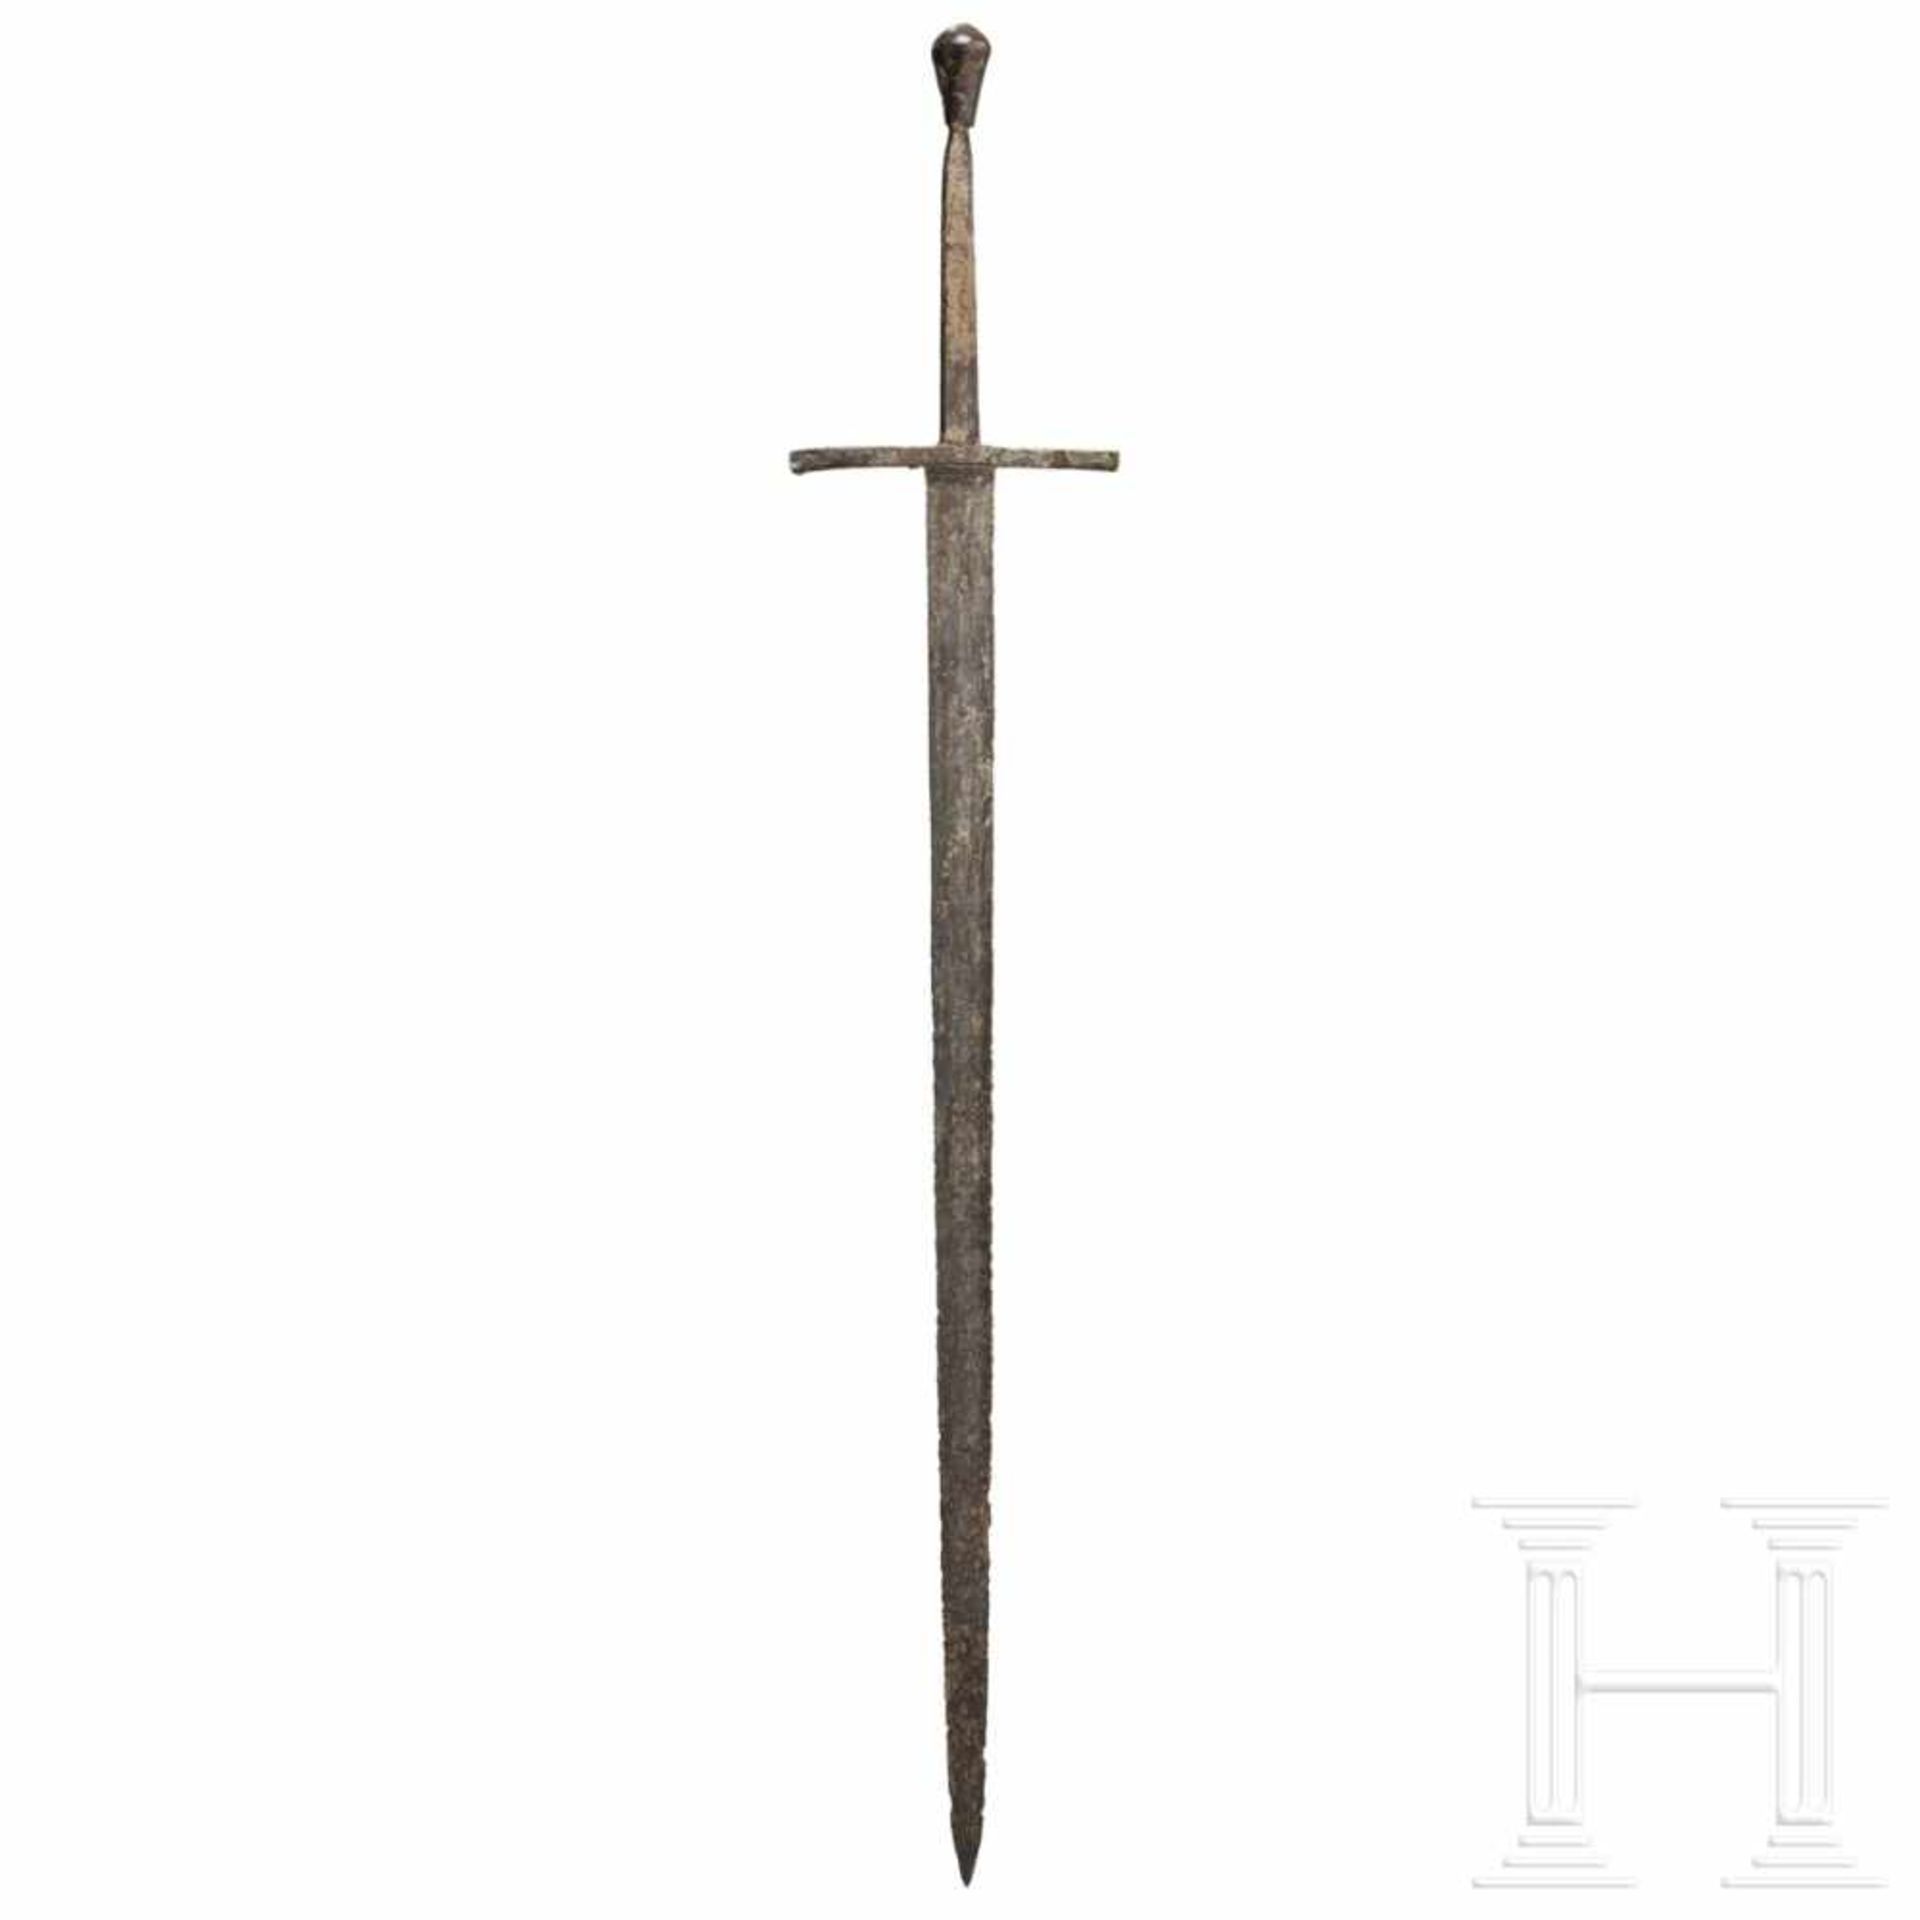 A German or Polish knightly sword, circa 1460Kräftige zweischneidige Klinge mit abgeflachtem - Bild 2 aus 5